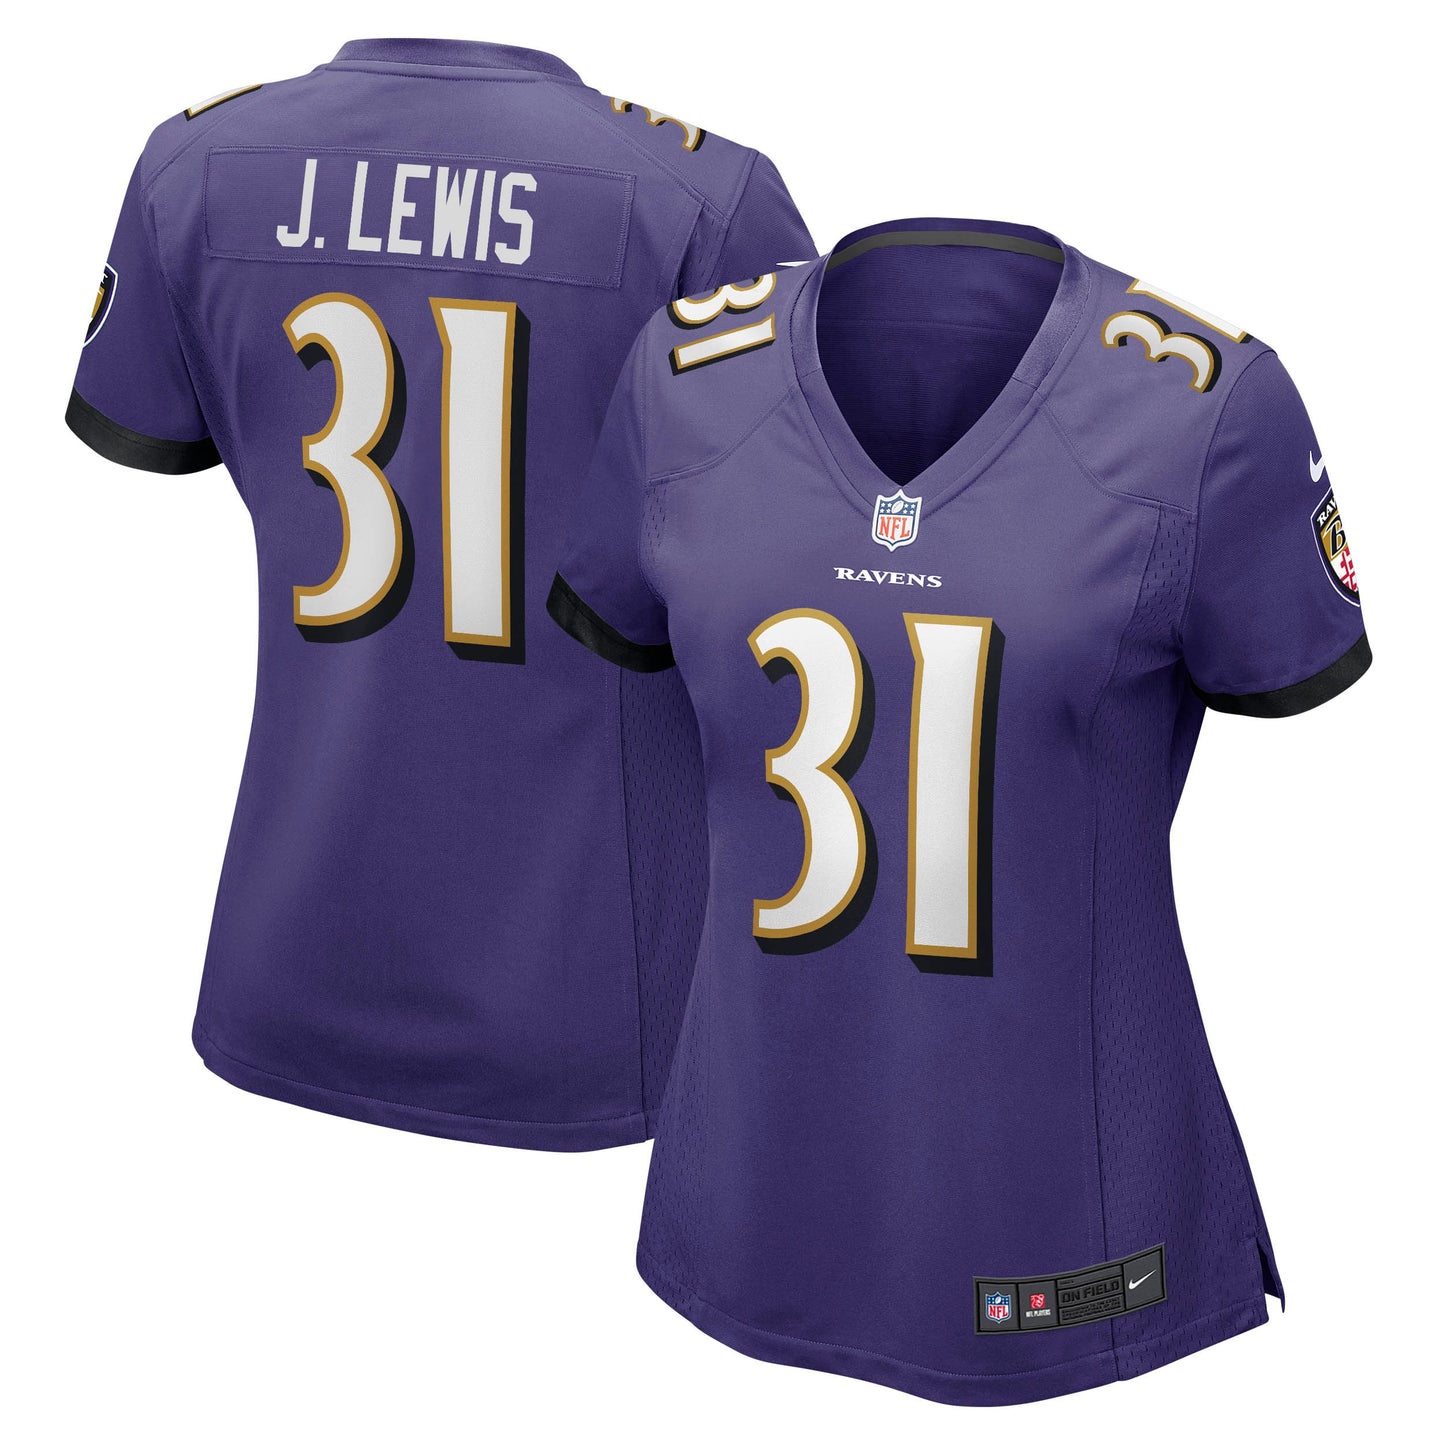 Jamal Lewis Baltimore Ravens Nike Women's Game Retired Player Jersey - Purple